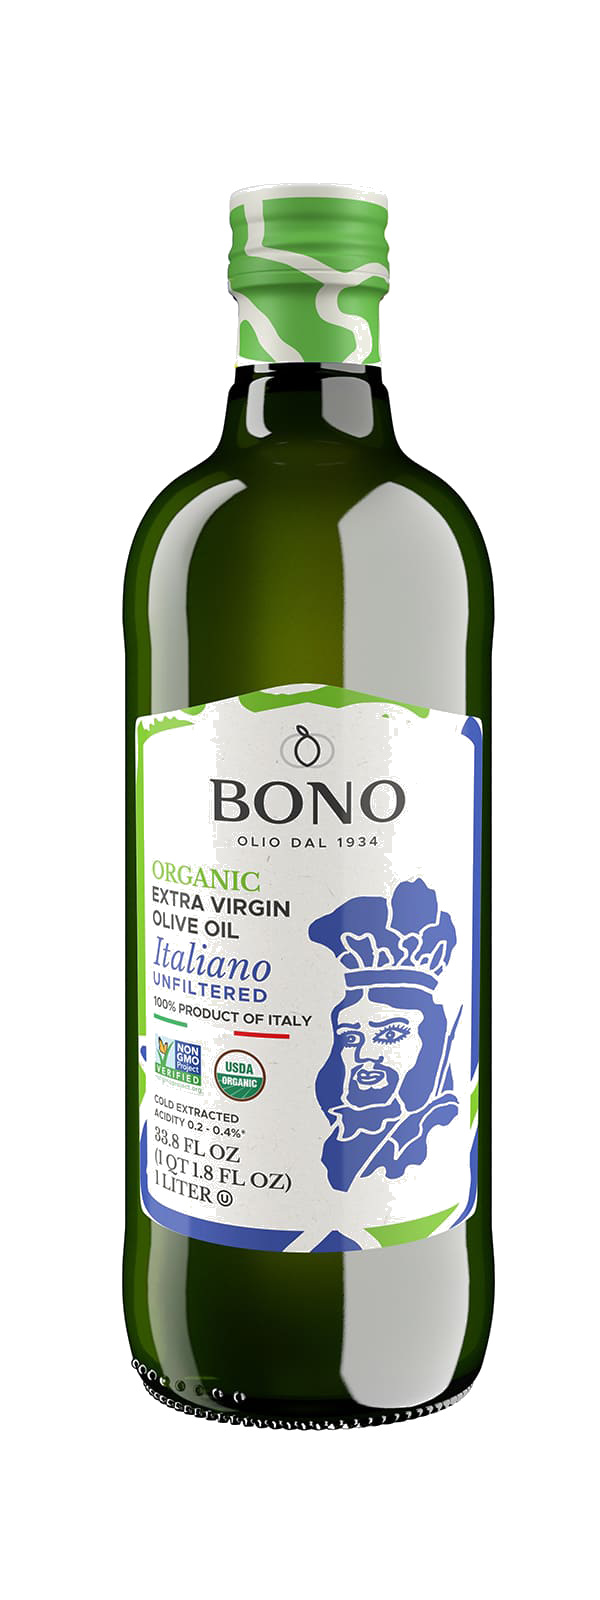 Bono Italian unfiltered olive oil